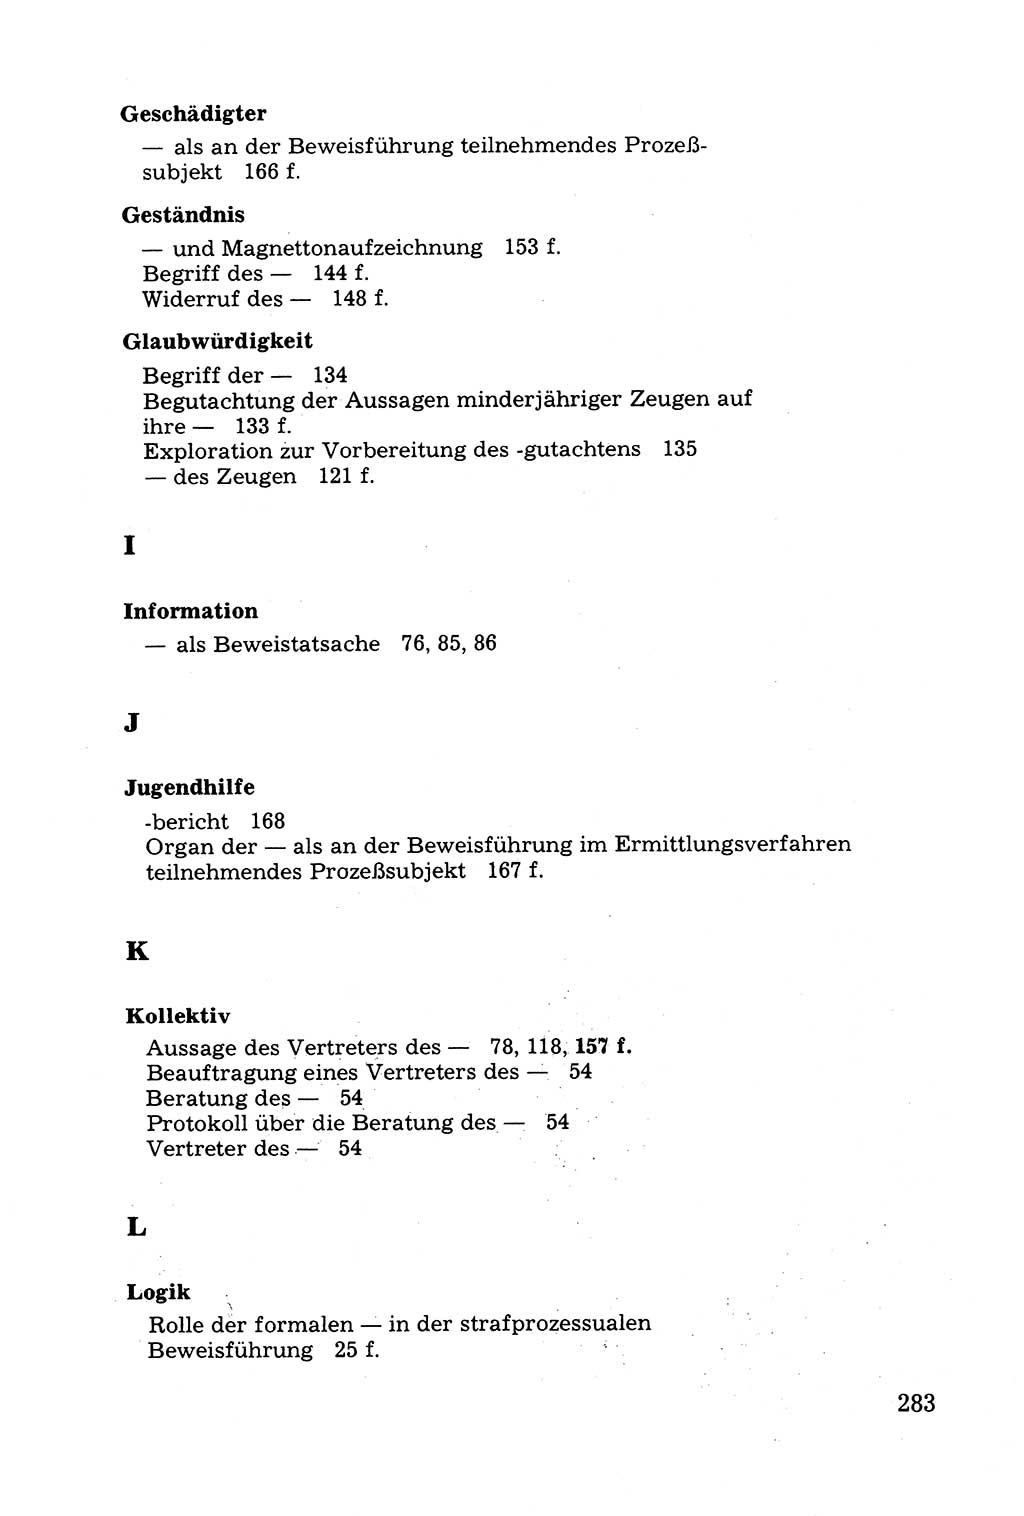 Grundfragen der Beweisführung im Ermittlungsverfahren [Deutsche Demokratische Republik (DDR)] 1980, Seite 283 (Bws.-Fhrg. EV DDR 1980, S. 283)